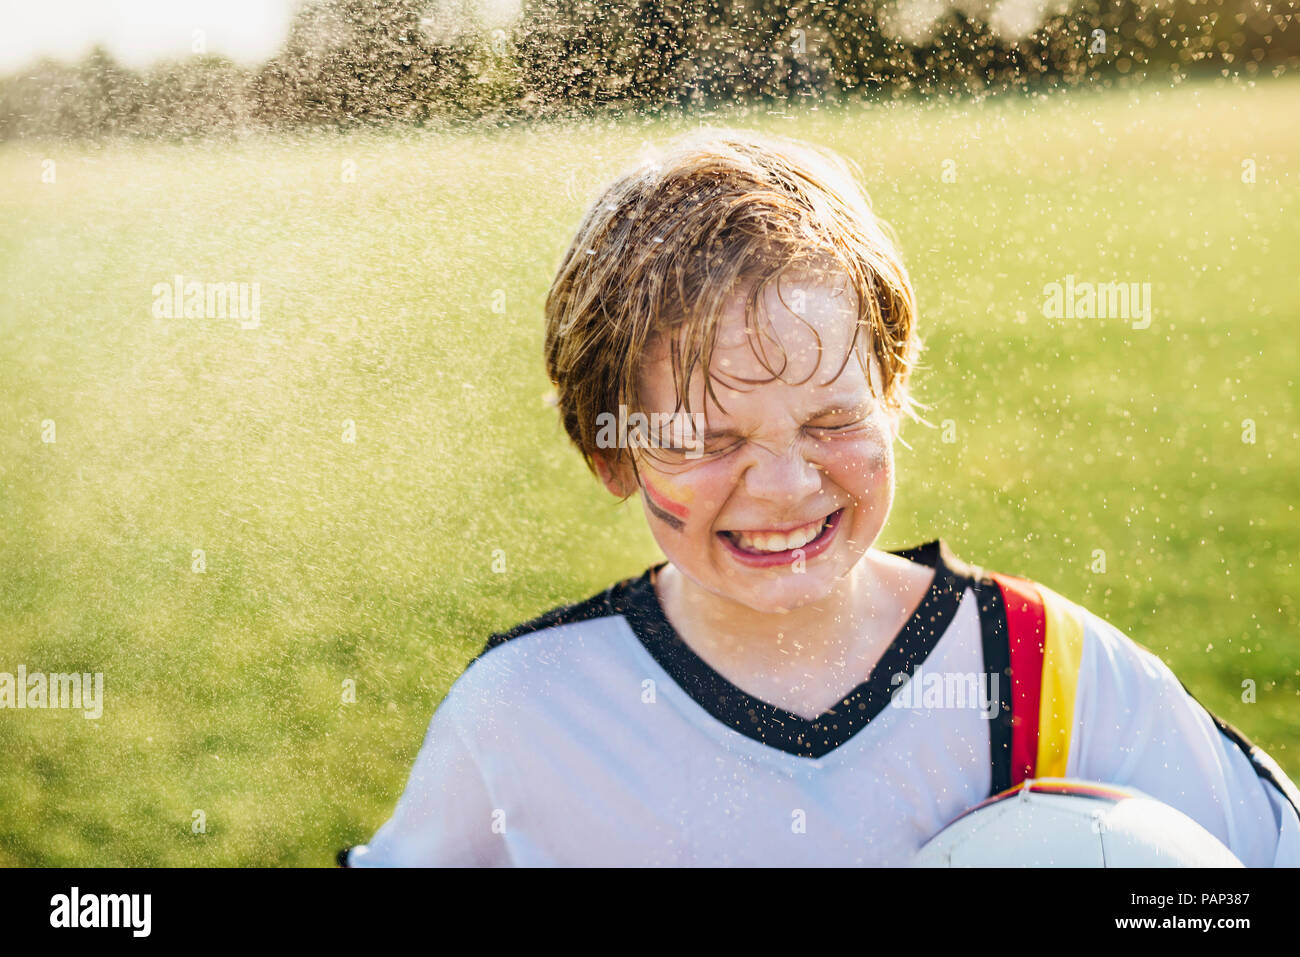 Boy wearing German soccer shirt debout dans les projections d'eau Banque D'Images